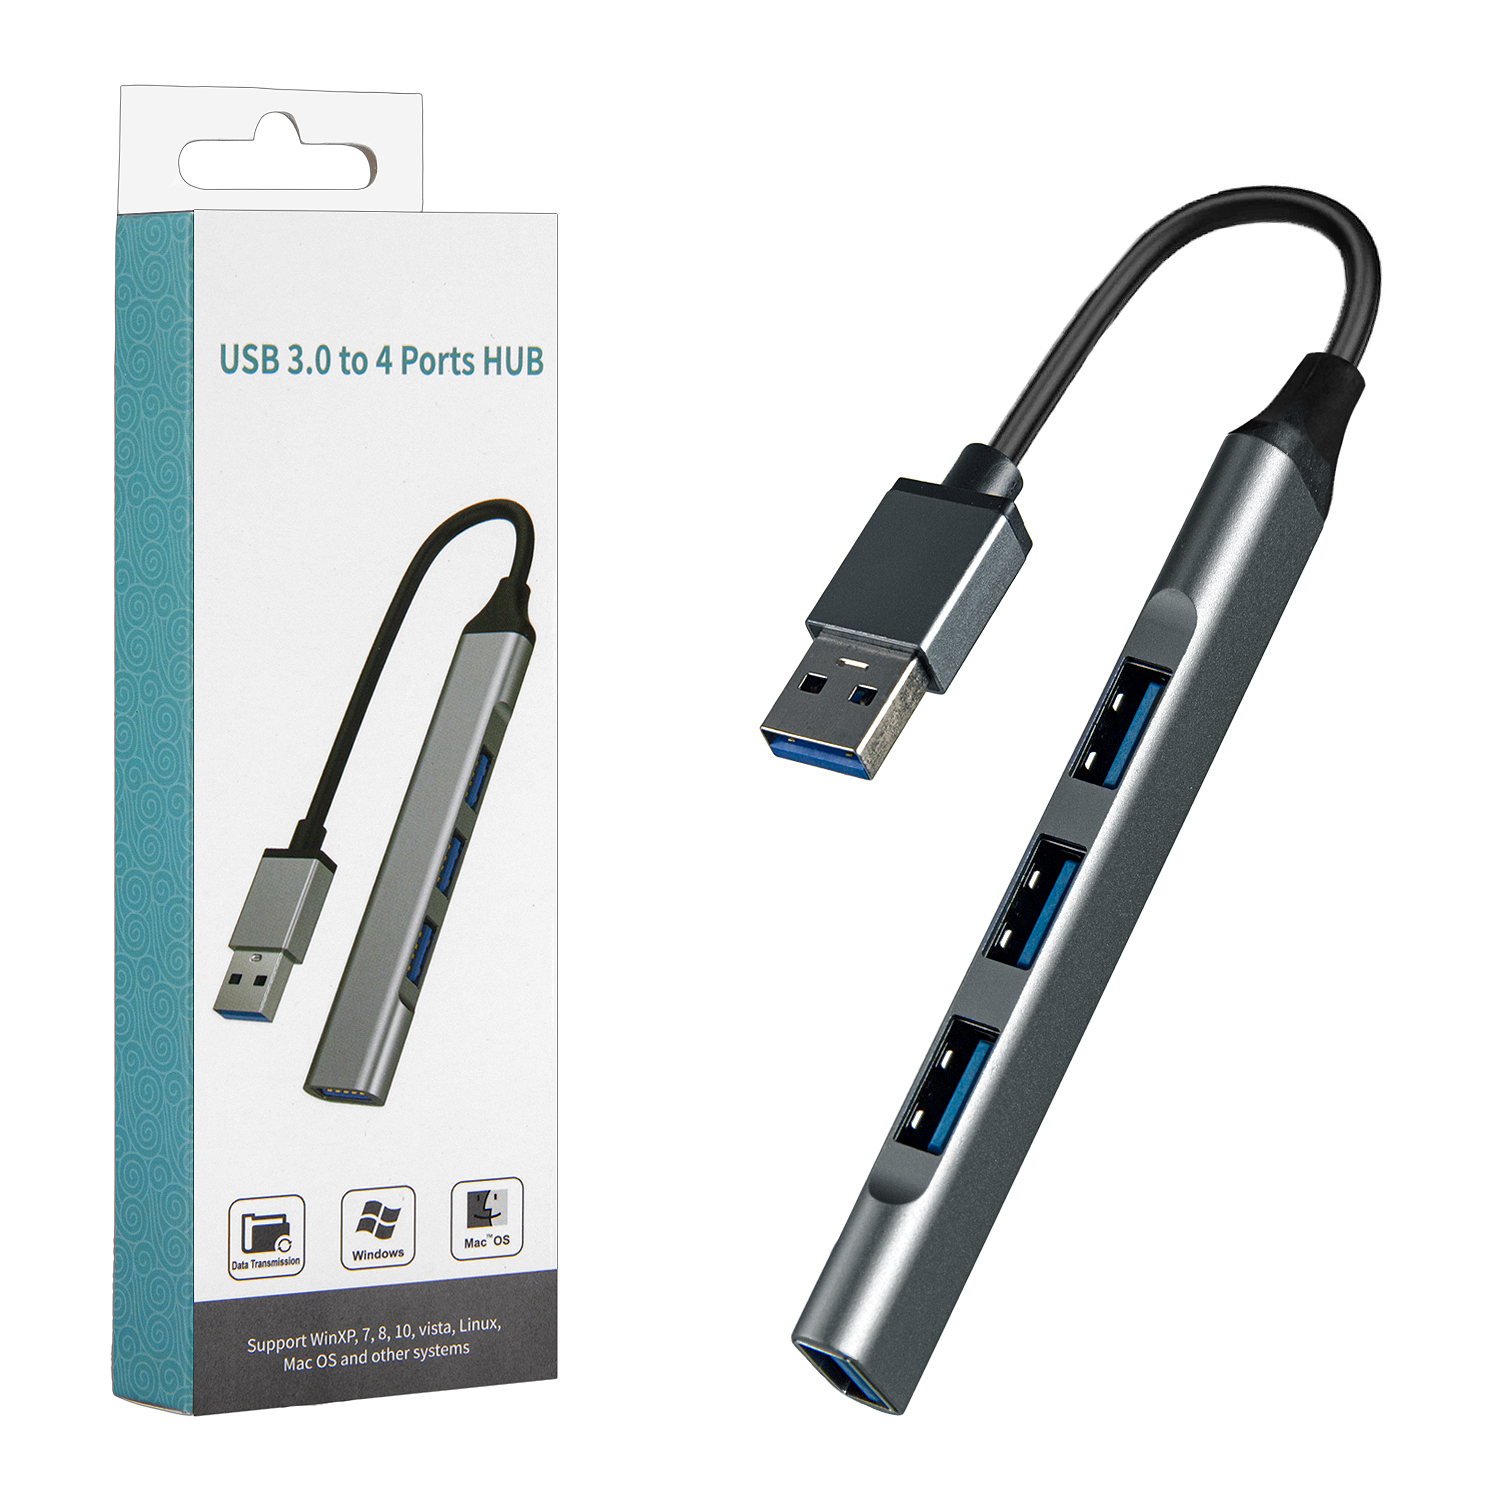 HUB USB 3.0 to 4 Ports USB Model:OT-5701